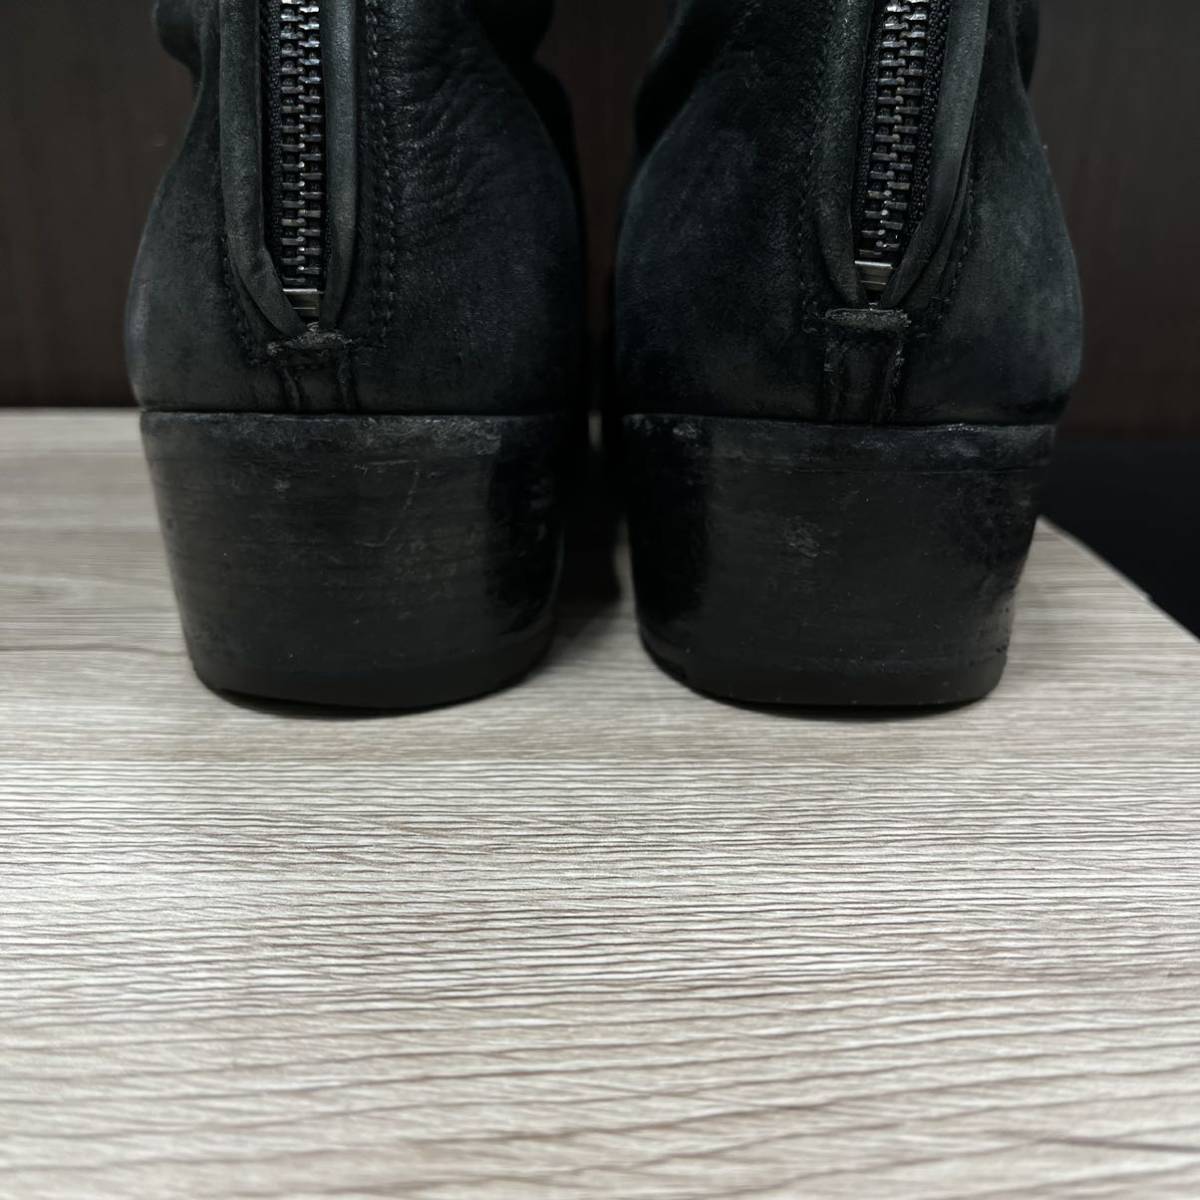 送料込≫ PREMIATA プレミアータ イタリア製 レザー ジップアップブーツ メンズ メン men ブーツ 黒 ブラック シューズ 革 皮 靴_画像5